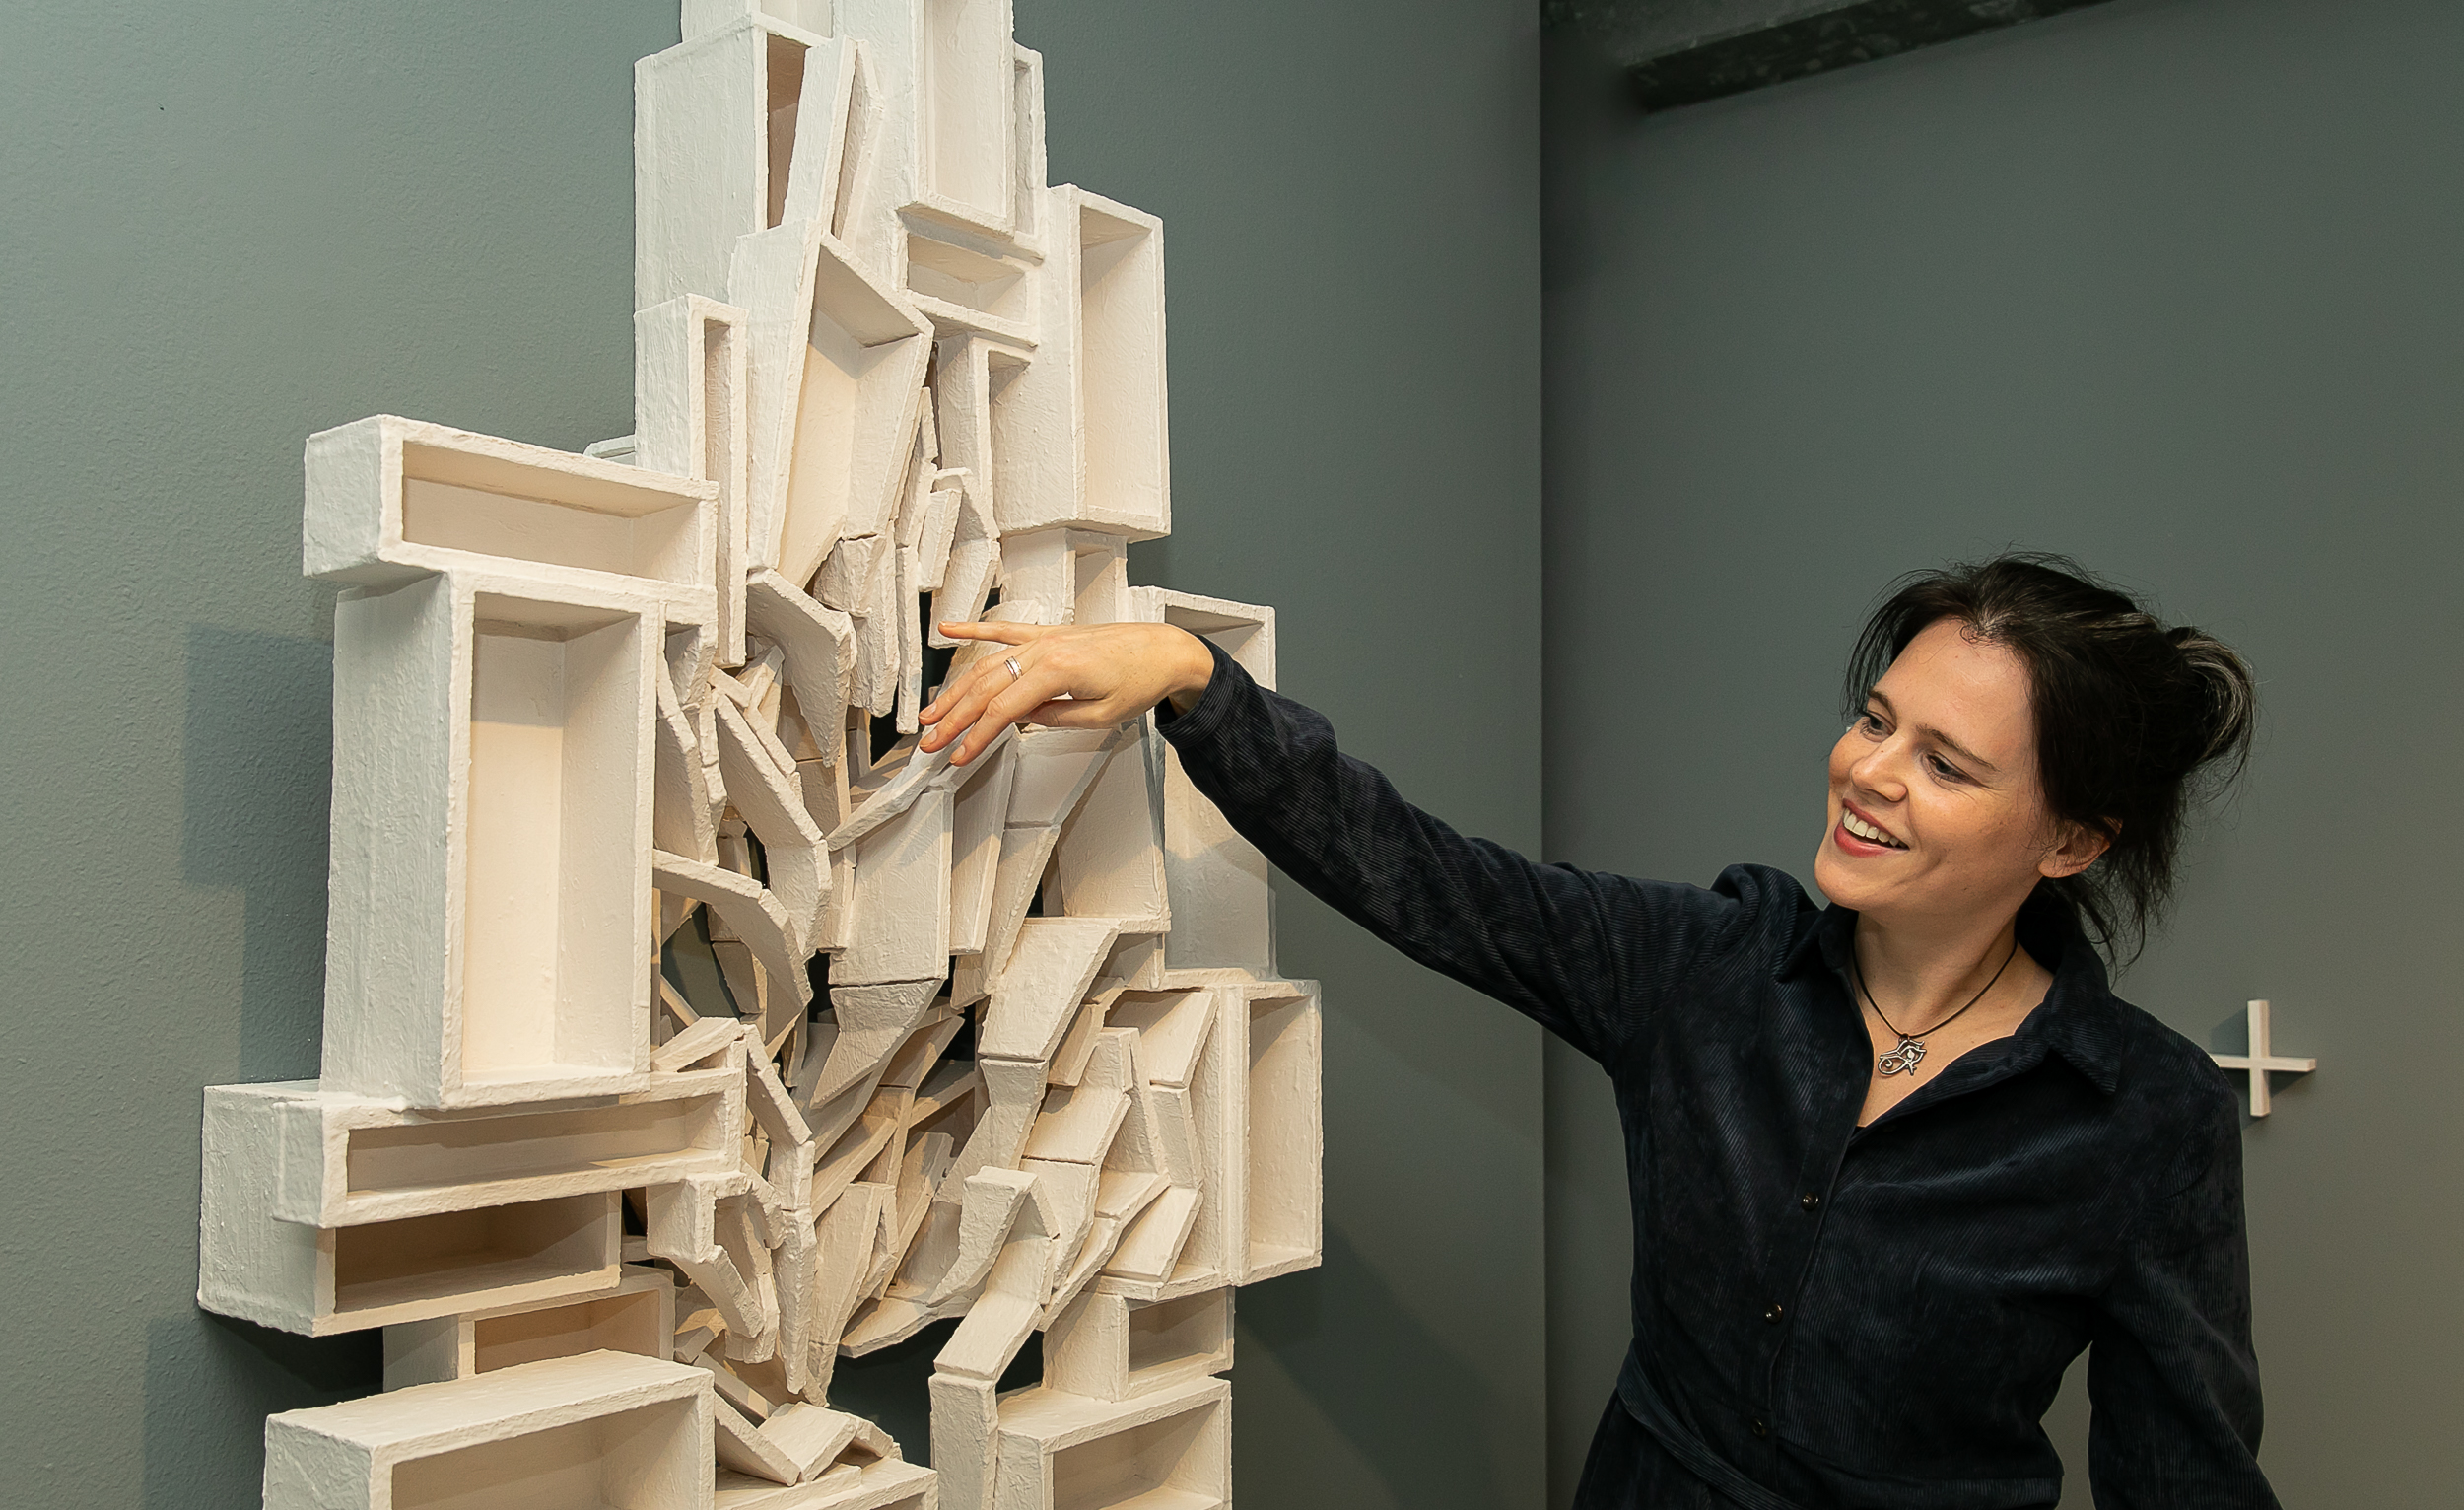 Scuulptuur 'Onthechting' van Elise van der Linden is te zien in het Mondriaanhuis.